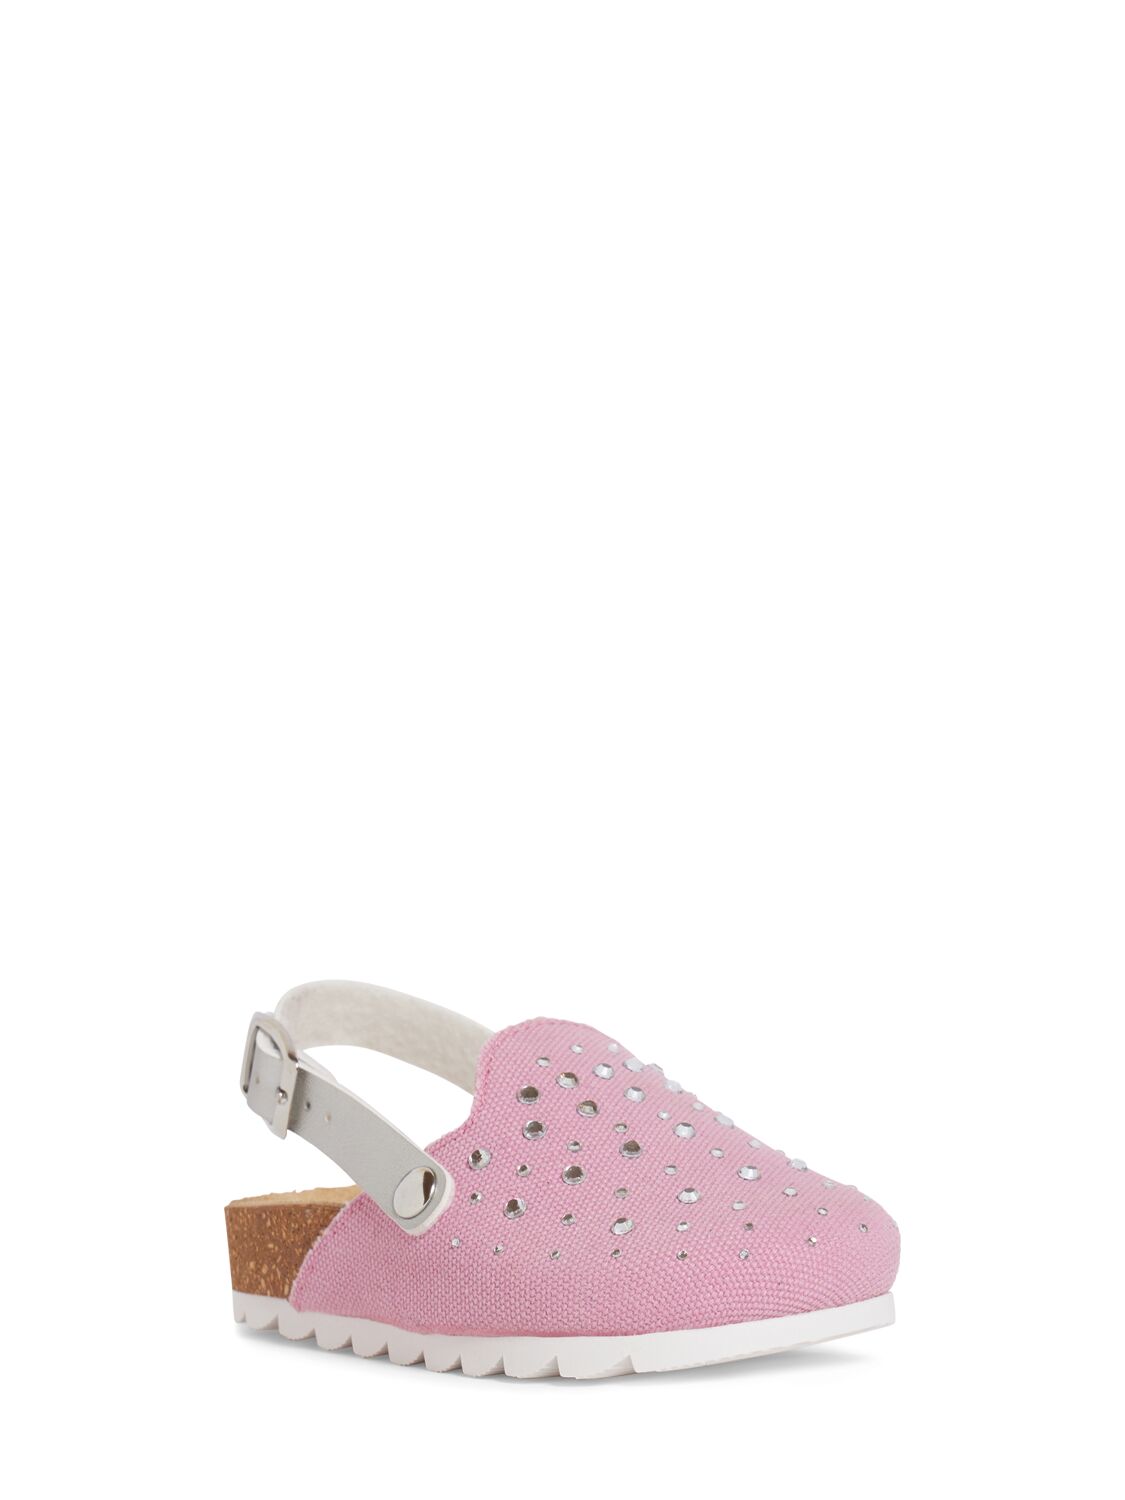 Shop Monnalisa Denim Sabot Sandals W/crystals In Pink